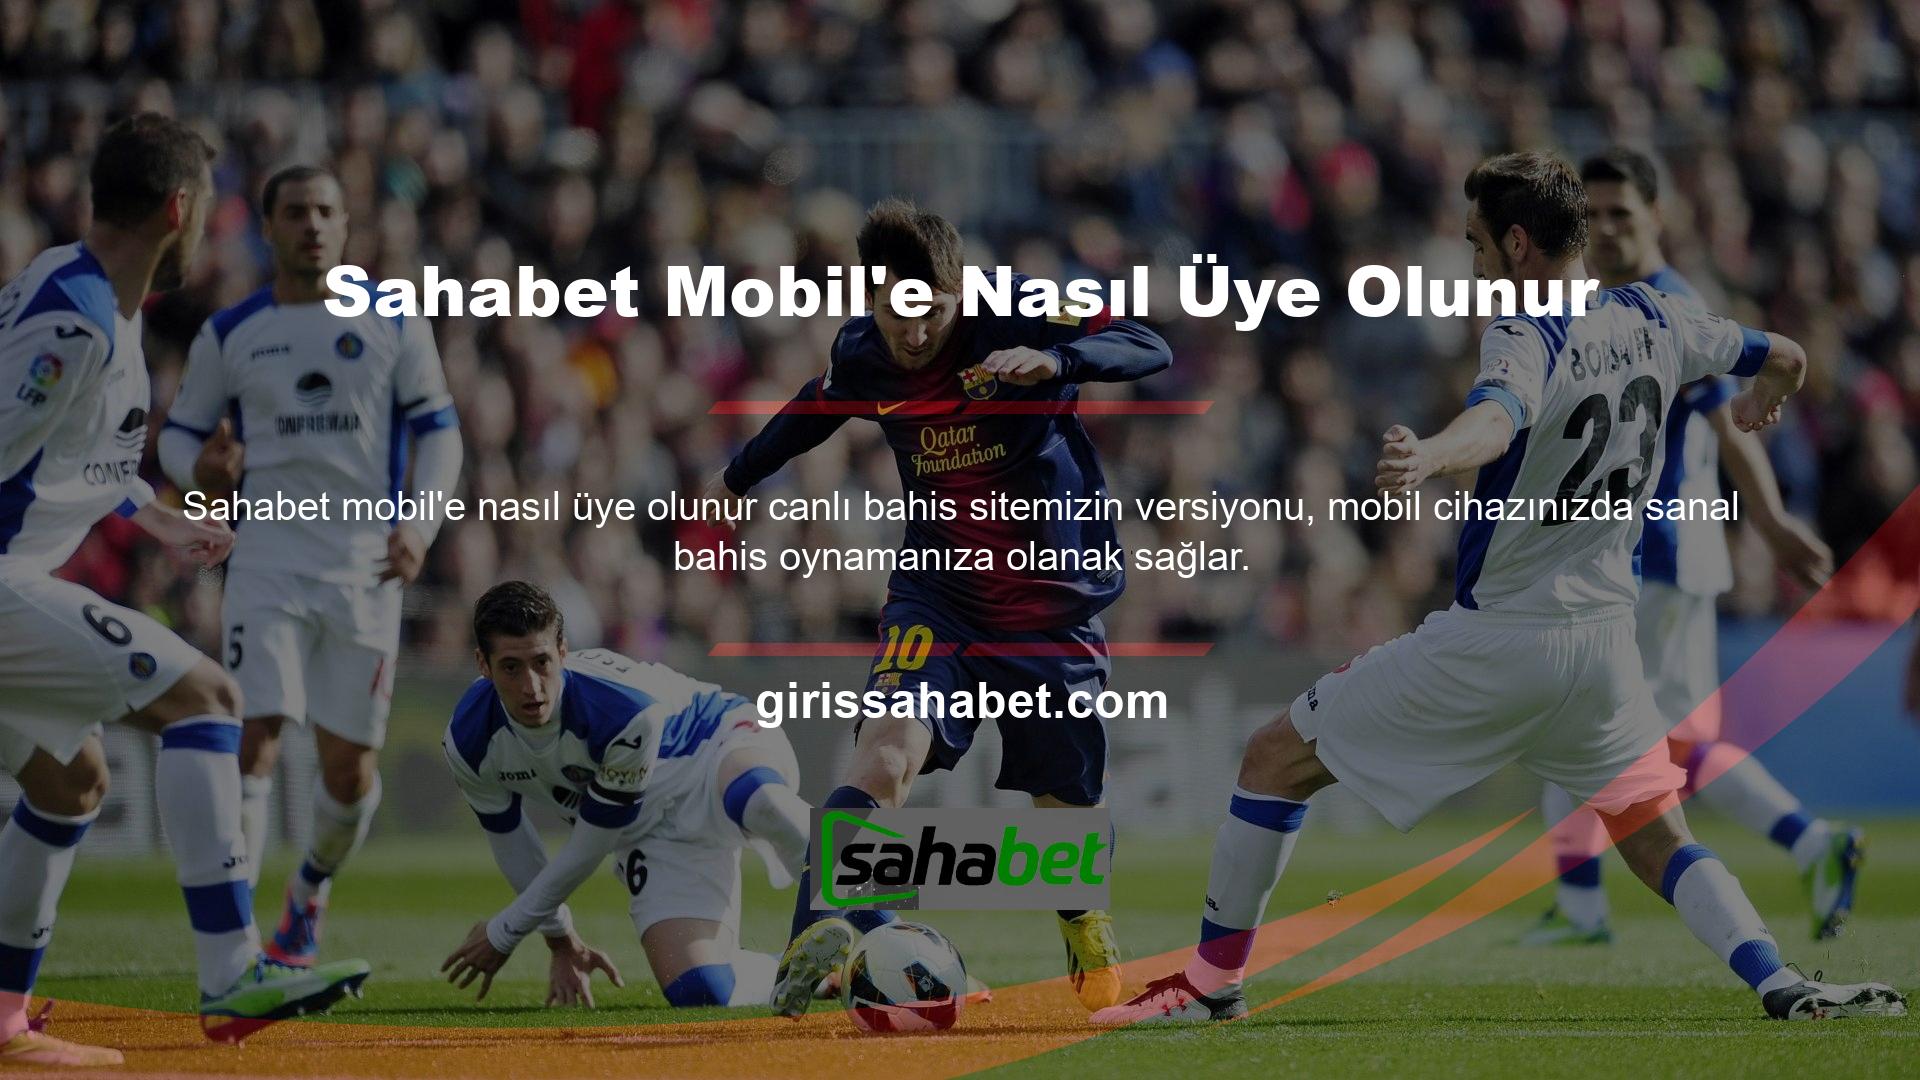 Sahabet Mobile giriş yapmak için tarayıcınıza mevcut web sitesi adresini girin